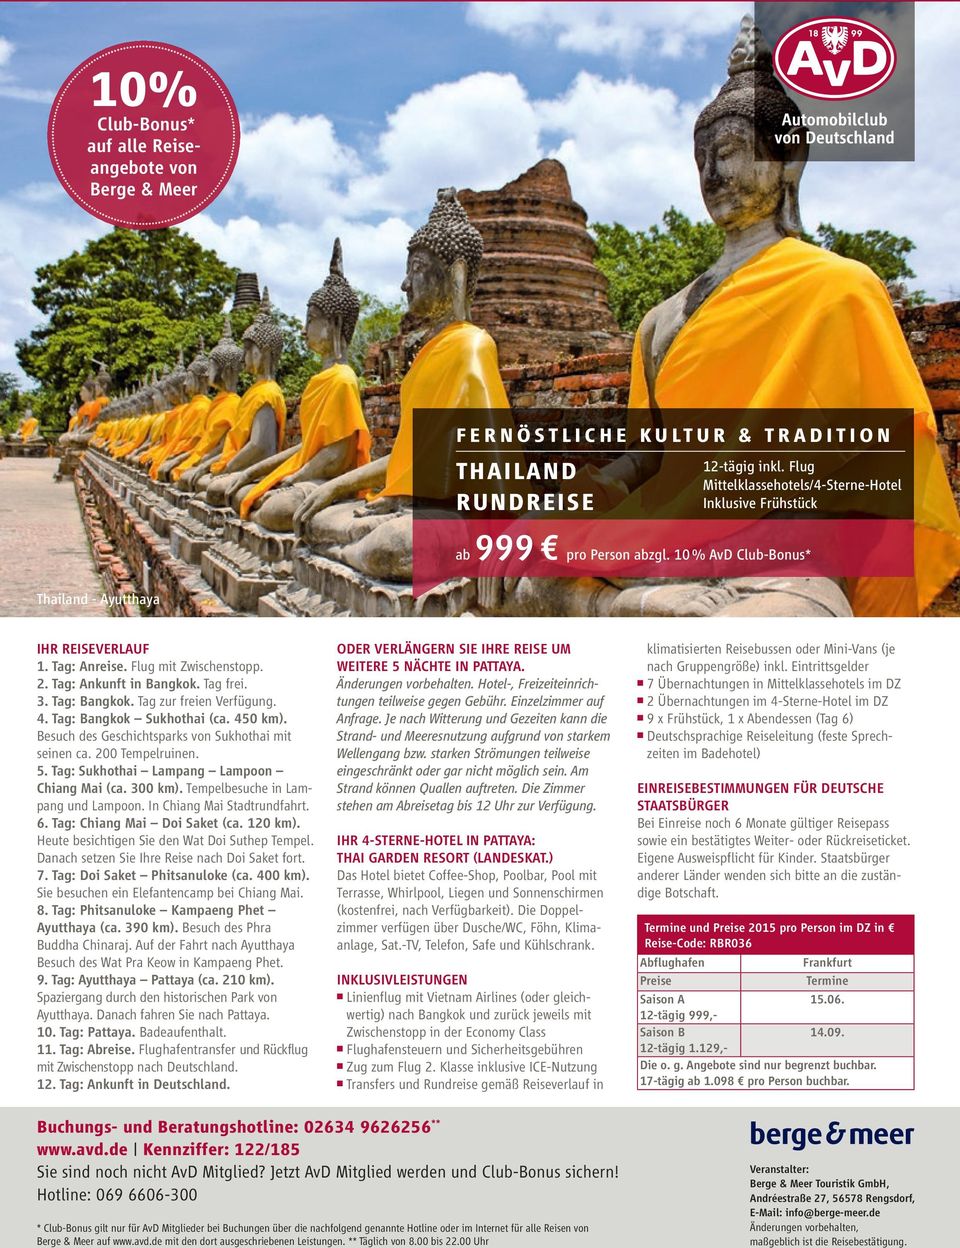 Tag: Ankunft in Bangkok. Tag frei. 3. Tag: Bangkok. Tag zur freien Verfügung. 4. Tag: Bangkok Sukhothai (ca. 450 km). Besuch des Geschichtsparks von Sukhothai mit seinen ca. 200 Tempelruinen. 5.